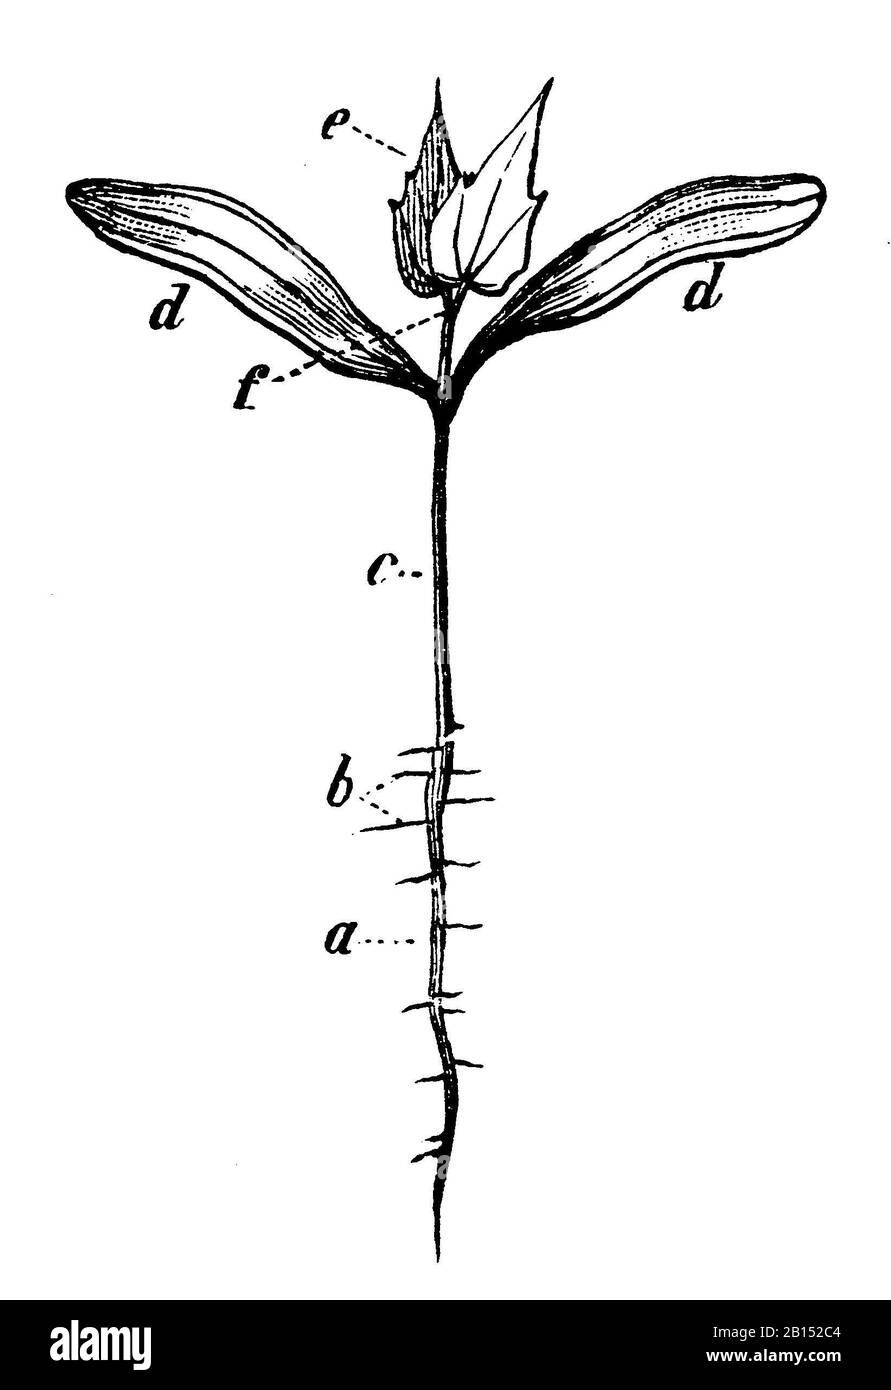 Acero norvegese, platanoidi Acer, Spitzahorn: Keimpflanze, aereo Éraibile, anonym (libro botanica, 1897) Foto Stock